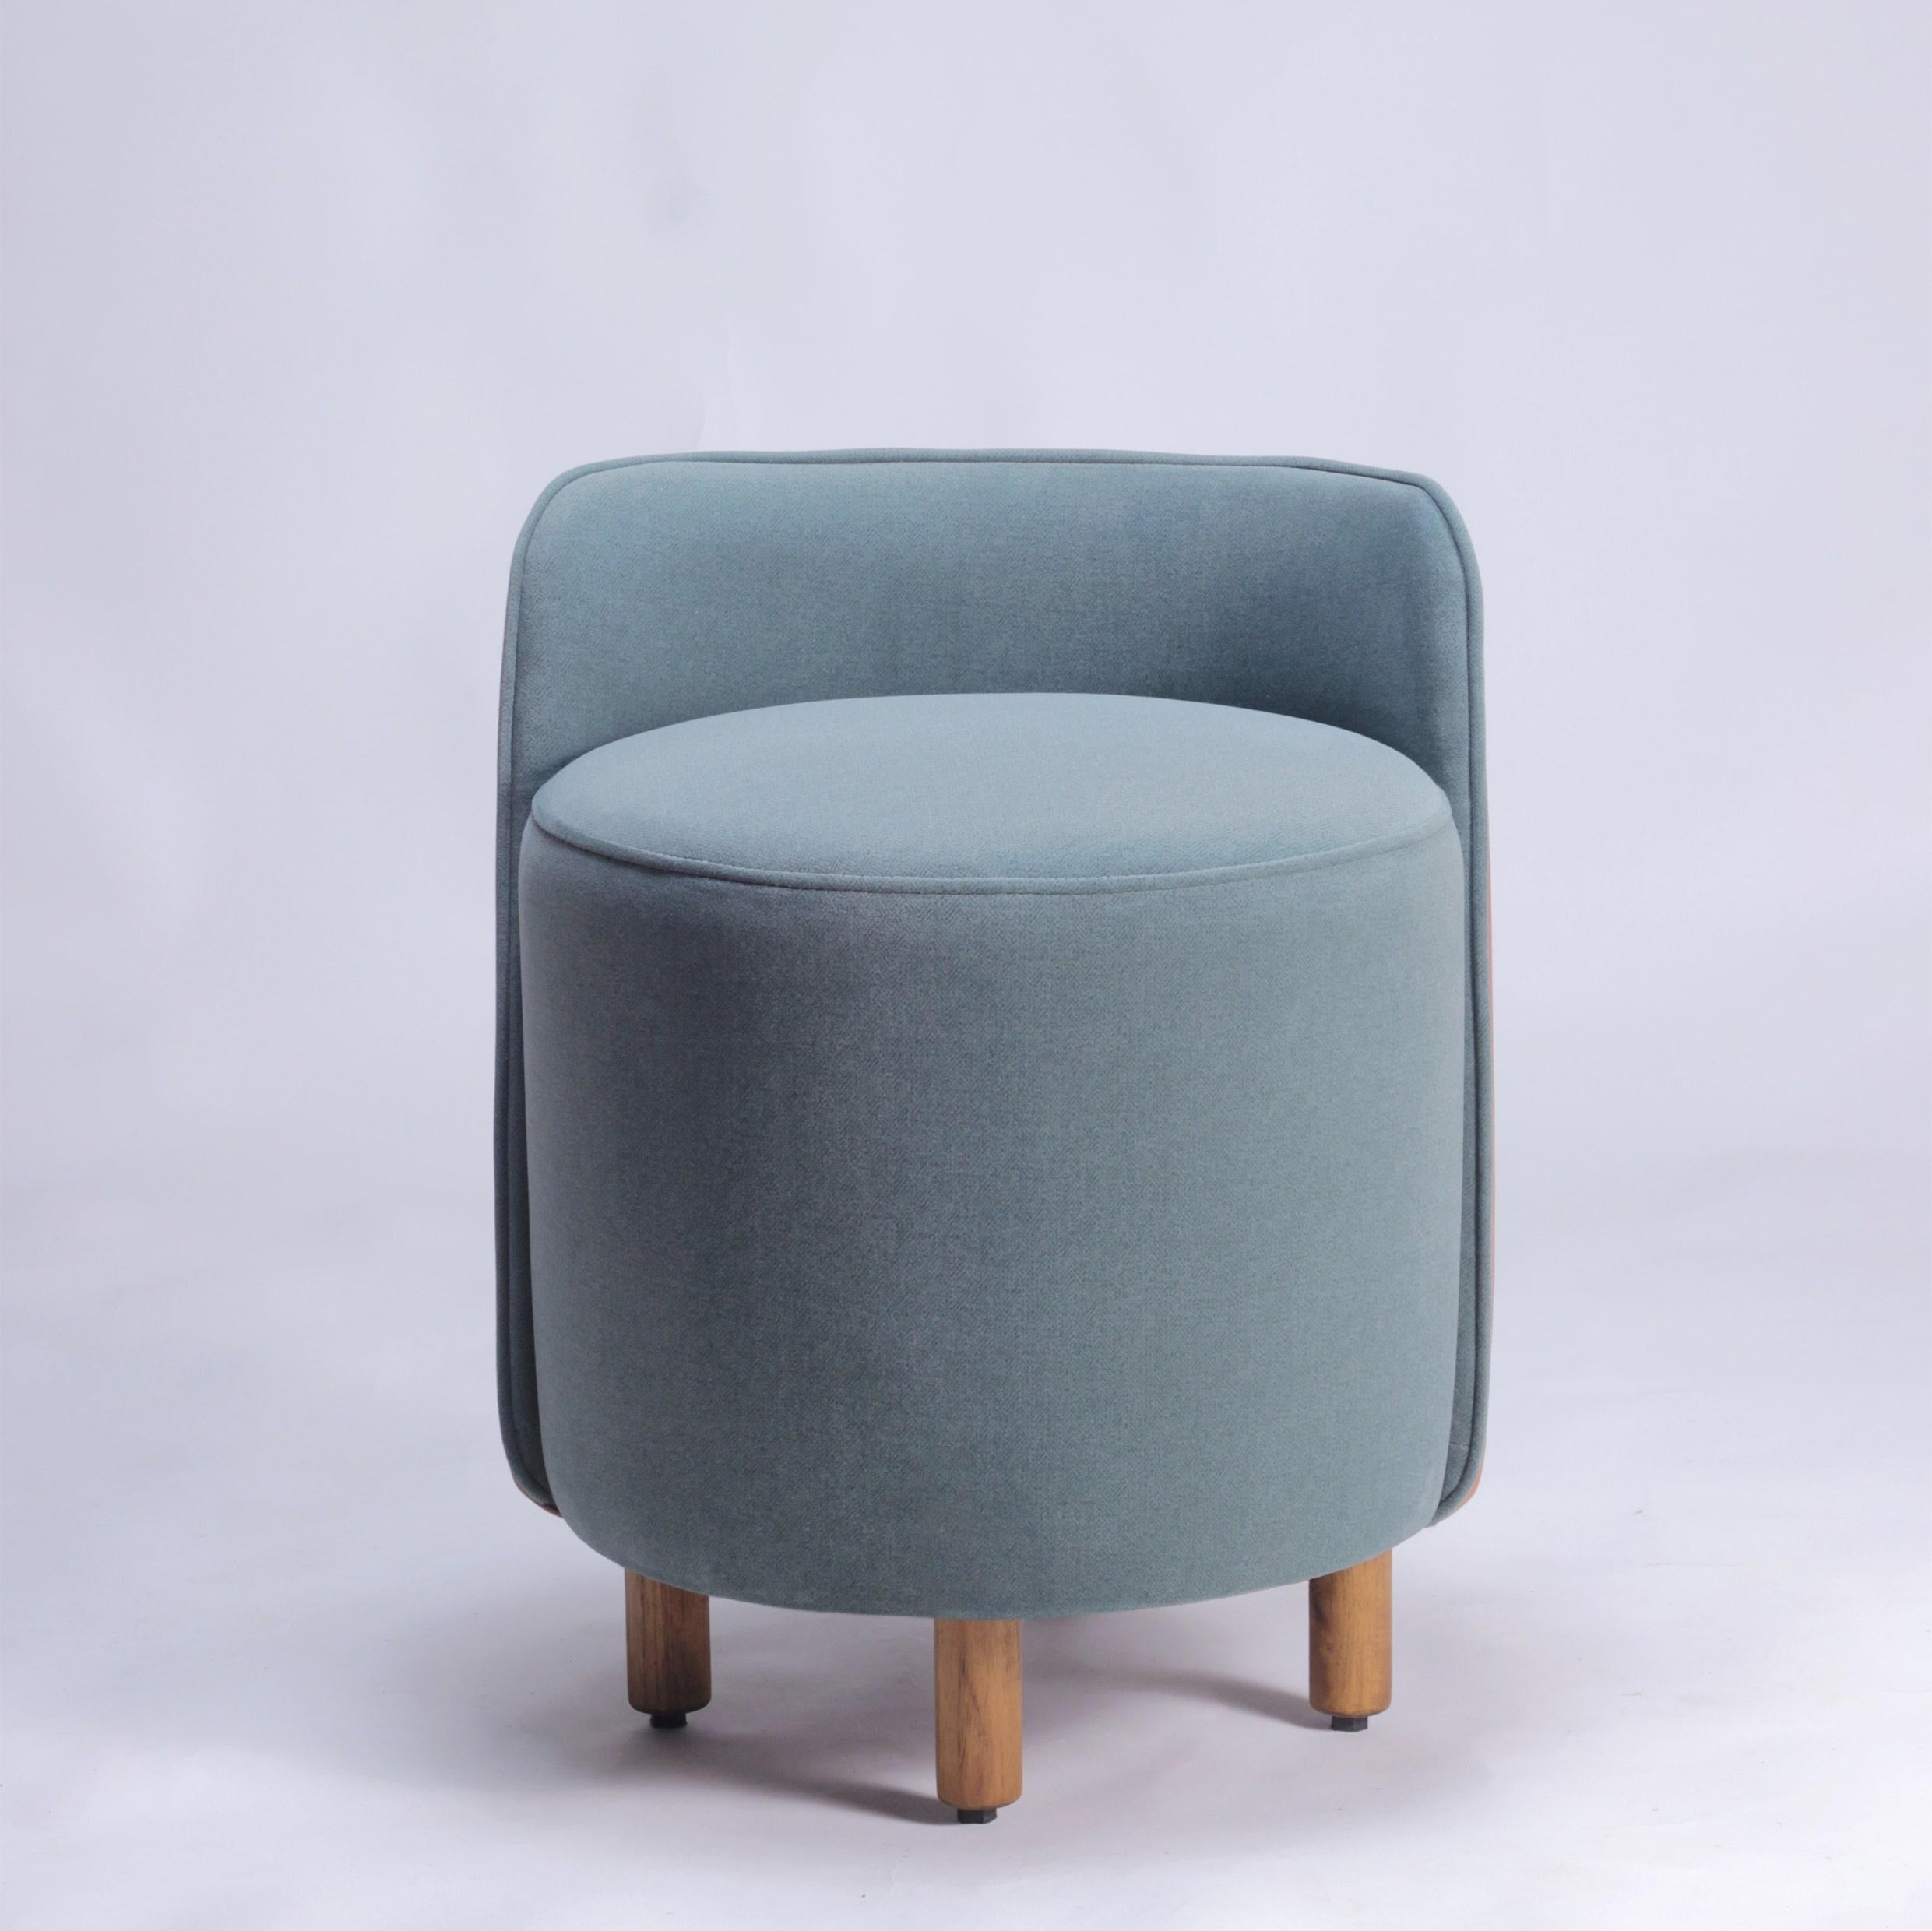 Der Minpuff Pouffe ist eine moderne und verspielte Ergänzung für jeden Raum. Mit seinen Beinen aus Massivholz, dem gepolsterten Sitz und der Rückenlehne eignet sich der Minpuff perfekt als Sitzgelegenheit oder als Fußbank. Die üppige Polsterung